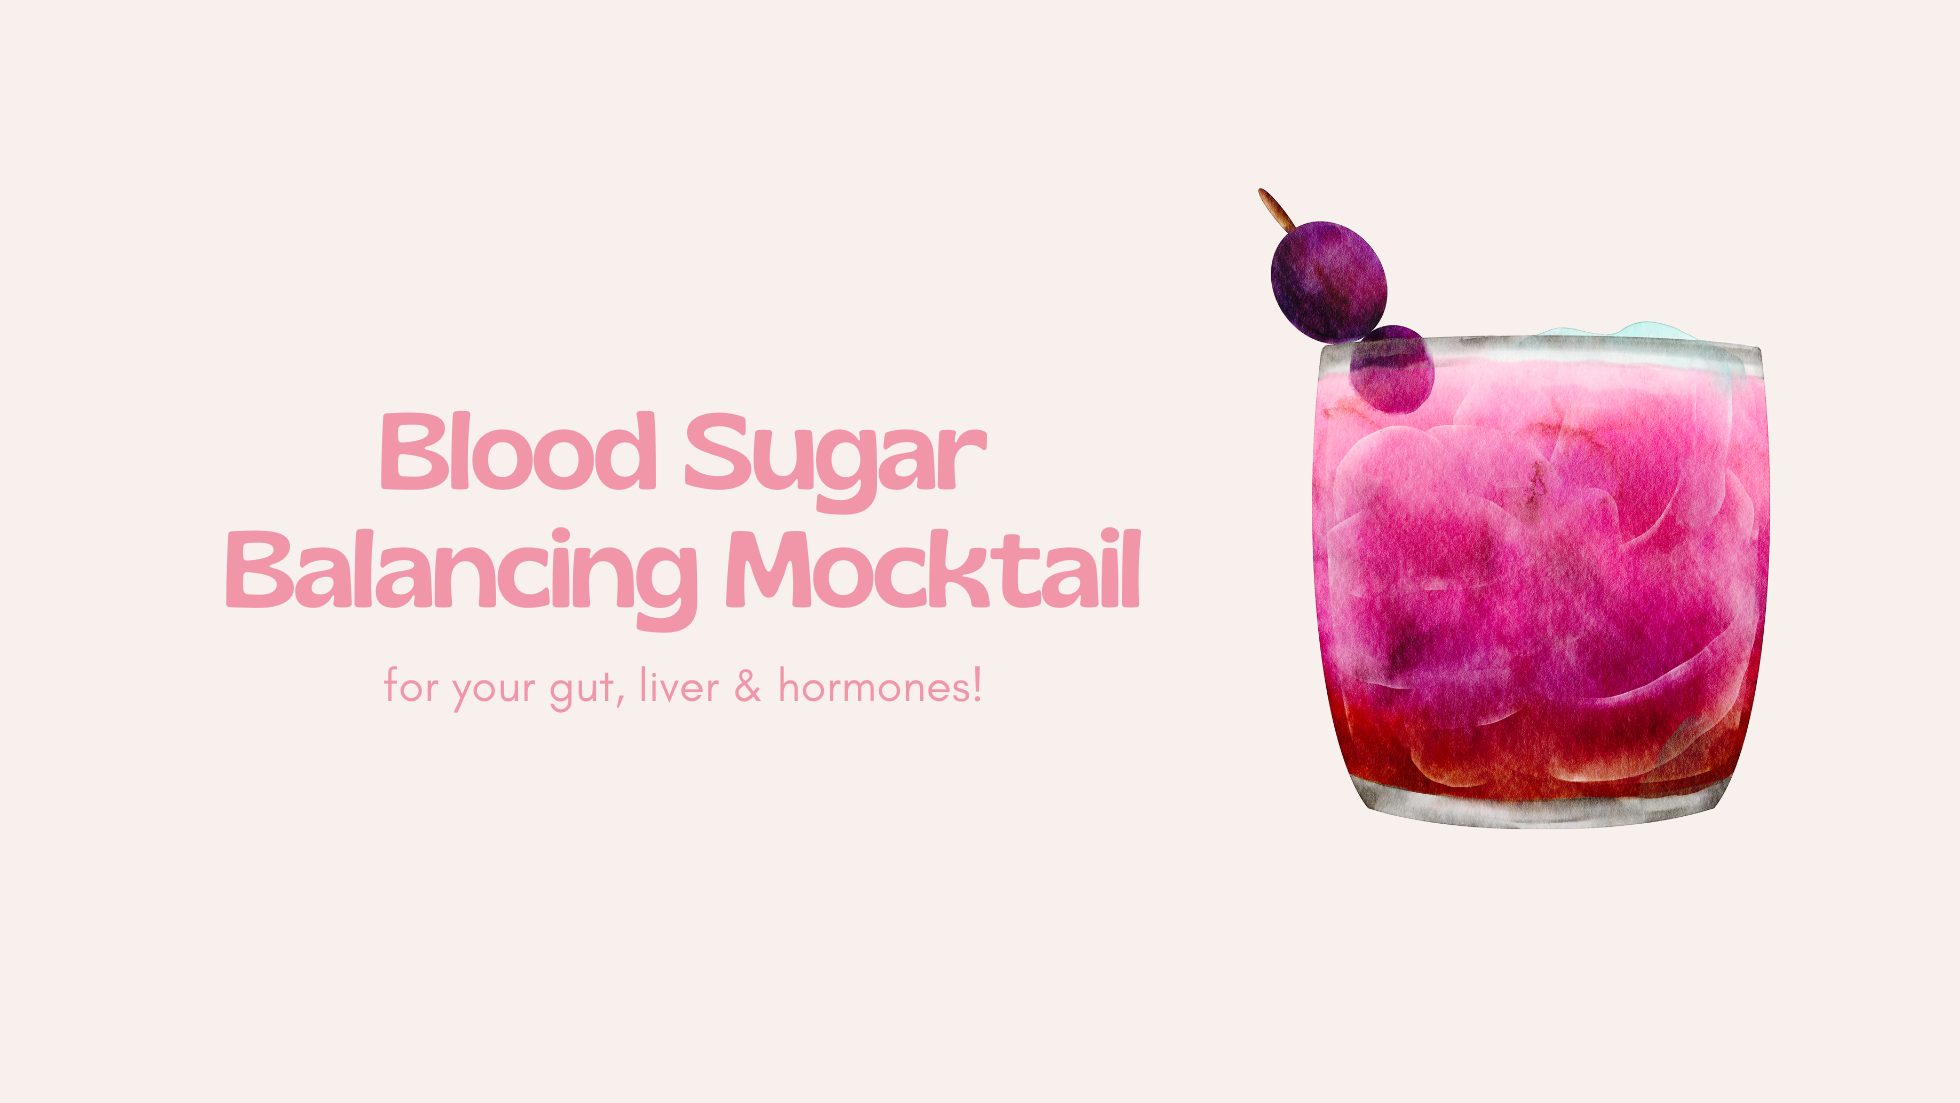 Blood Sugar Balancing Tonic